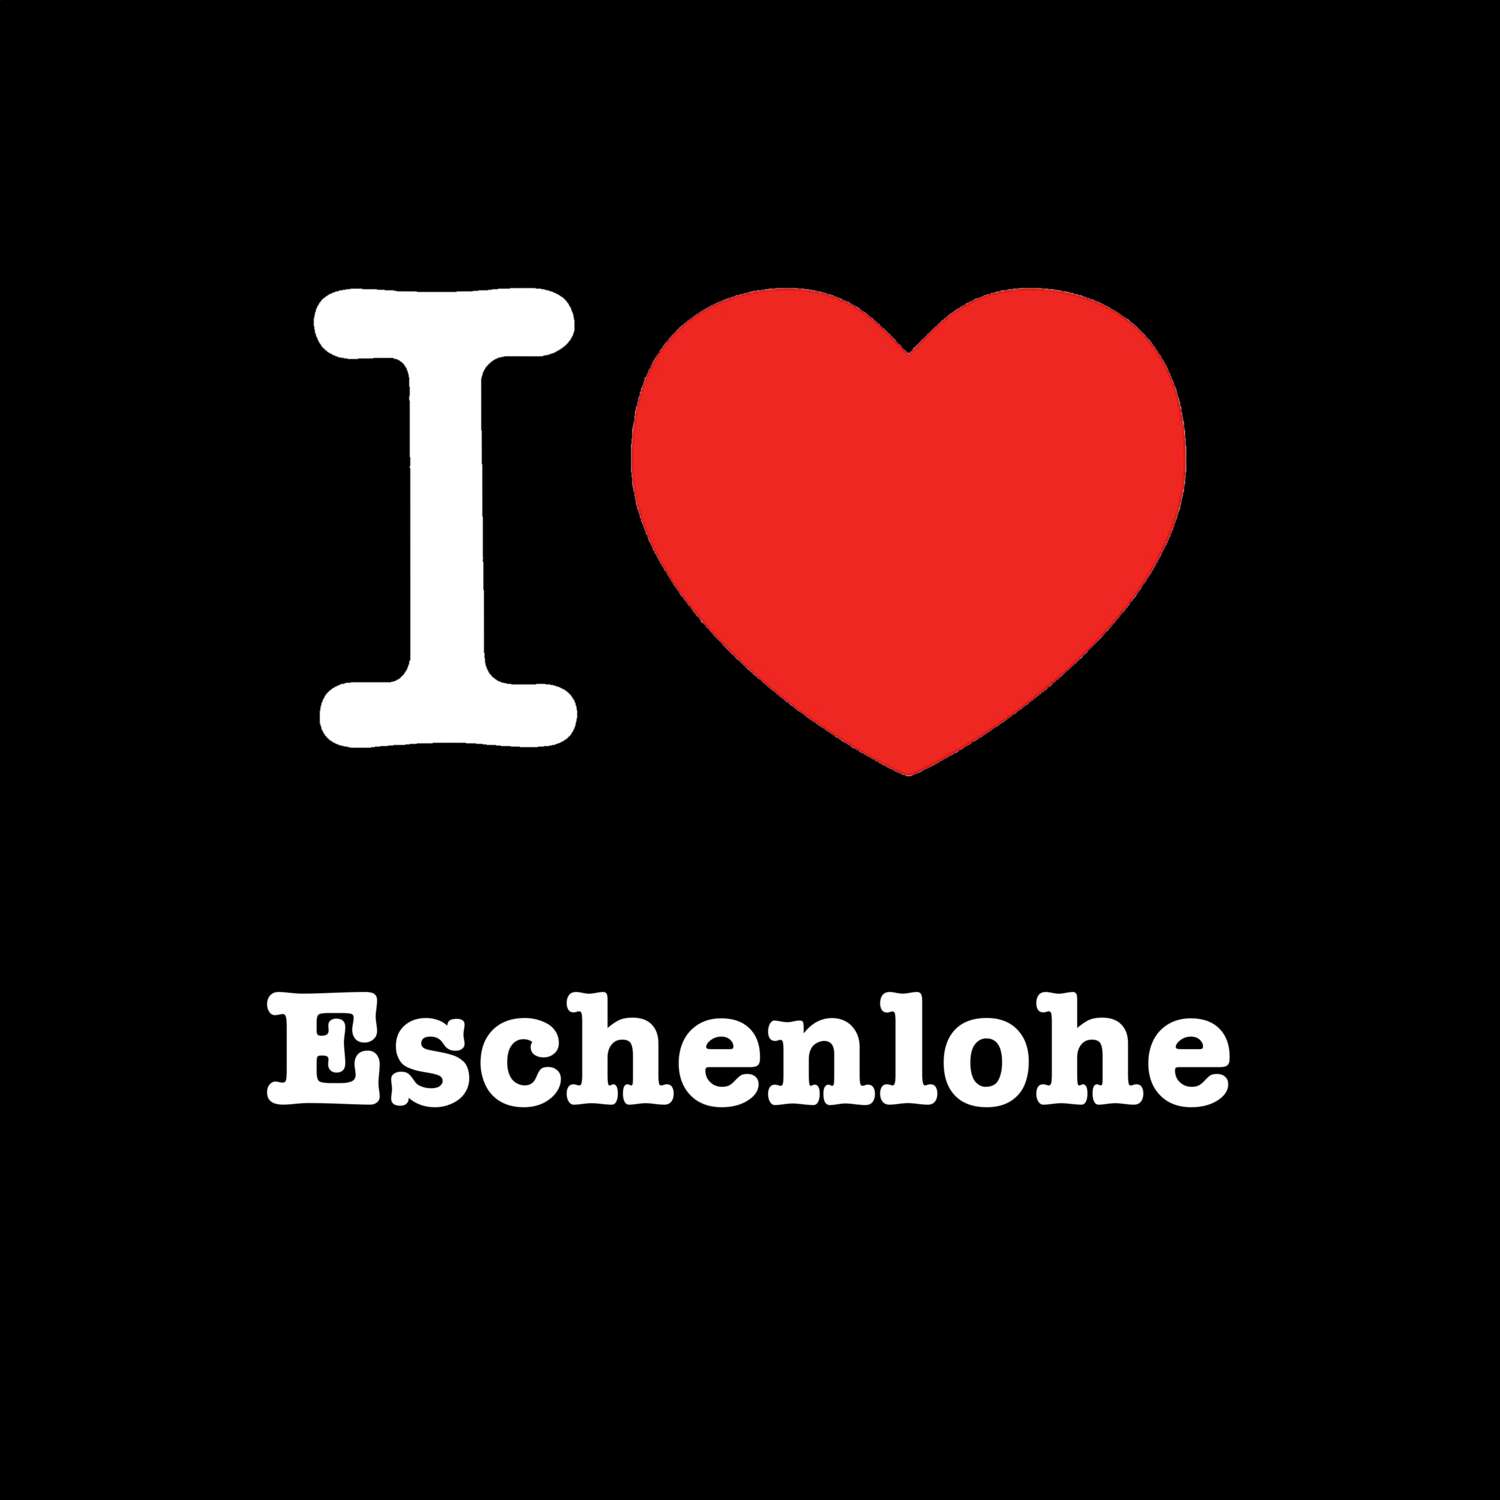 Eschenlohe T-Shirt »I love«